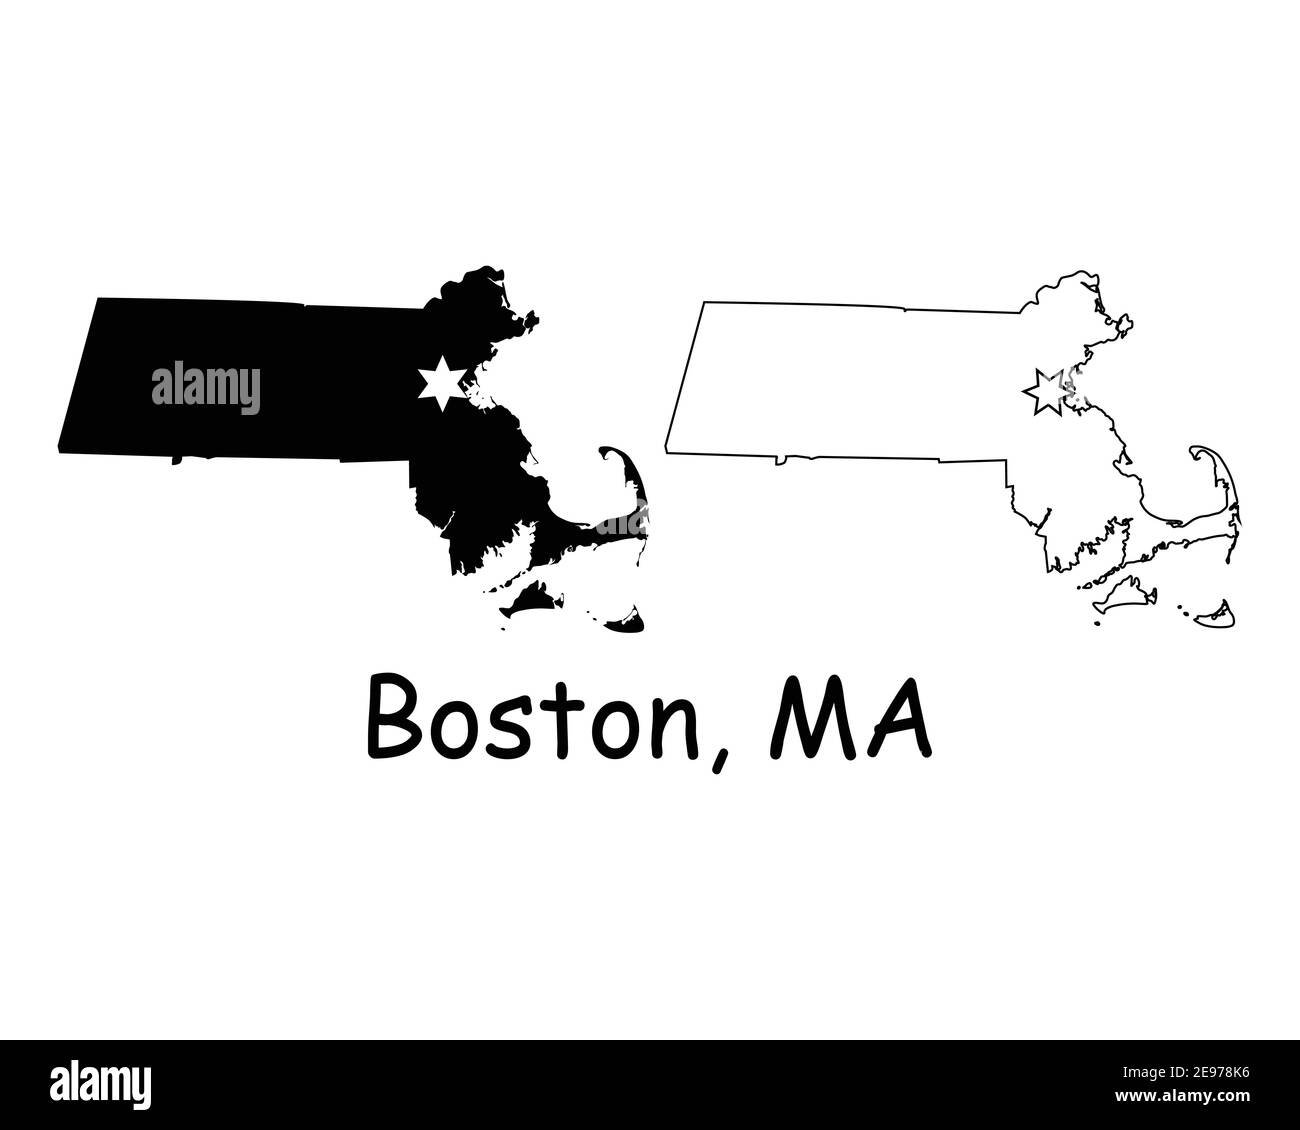 Massachusetts MA State Map USA mit Capital City Star in Boston. Schwarze Silhouette und Umriss isoliert auf weißem Hintergrund. EPS-Vektor Stock Vektor